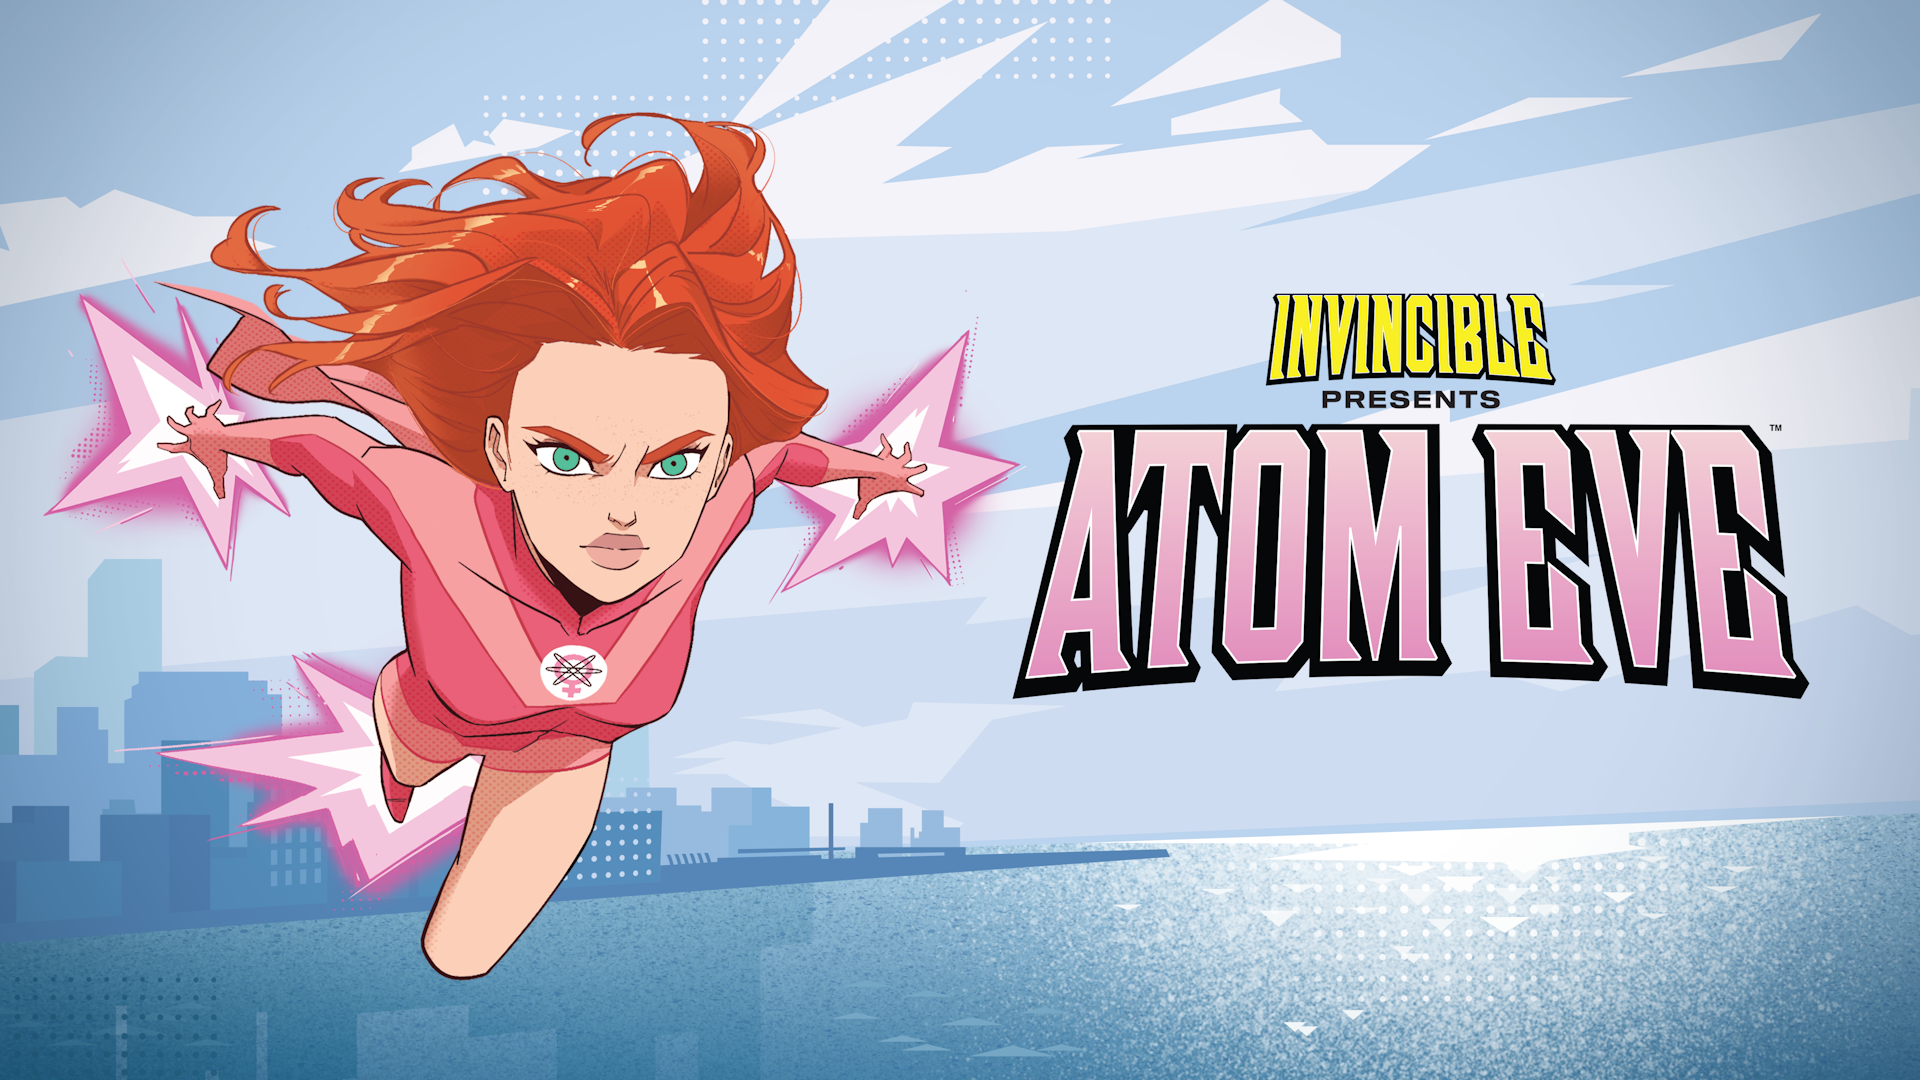 Immagine chiave del videogioco Invincible Presents: Atom Eve